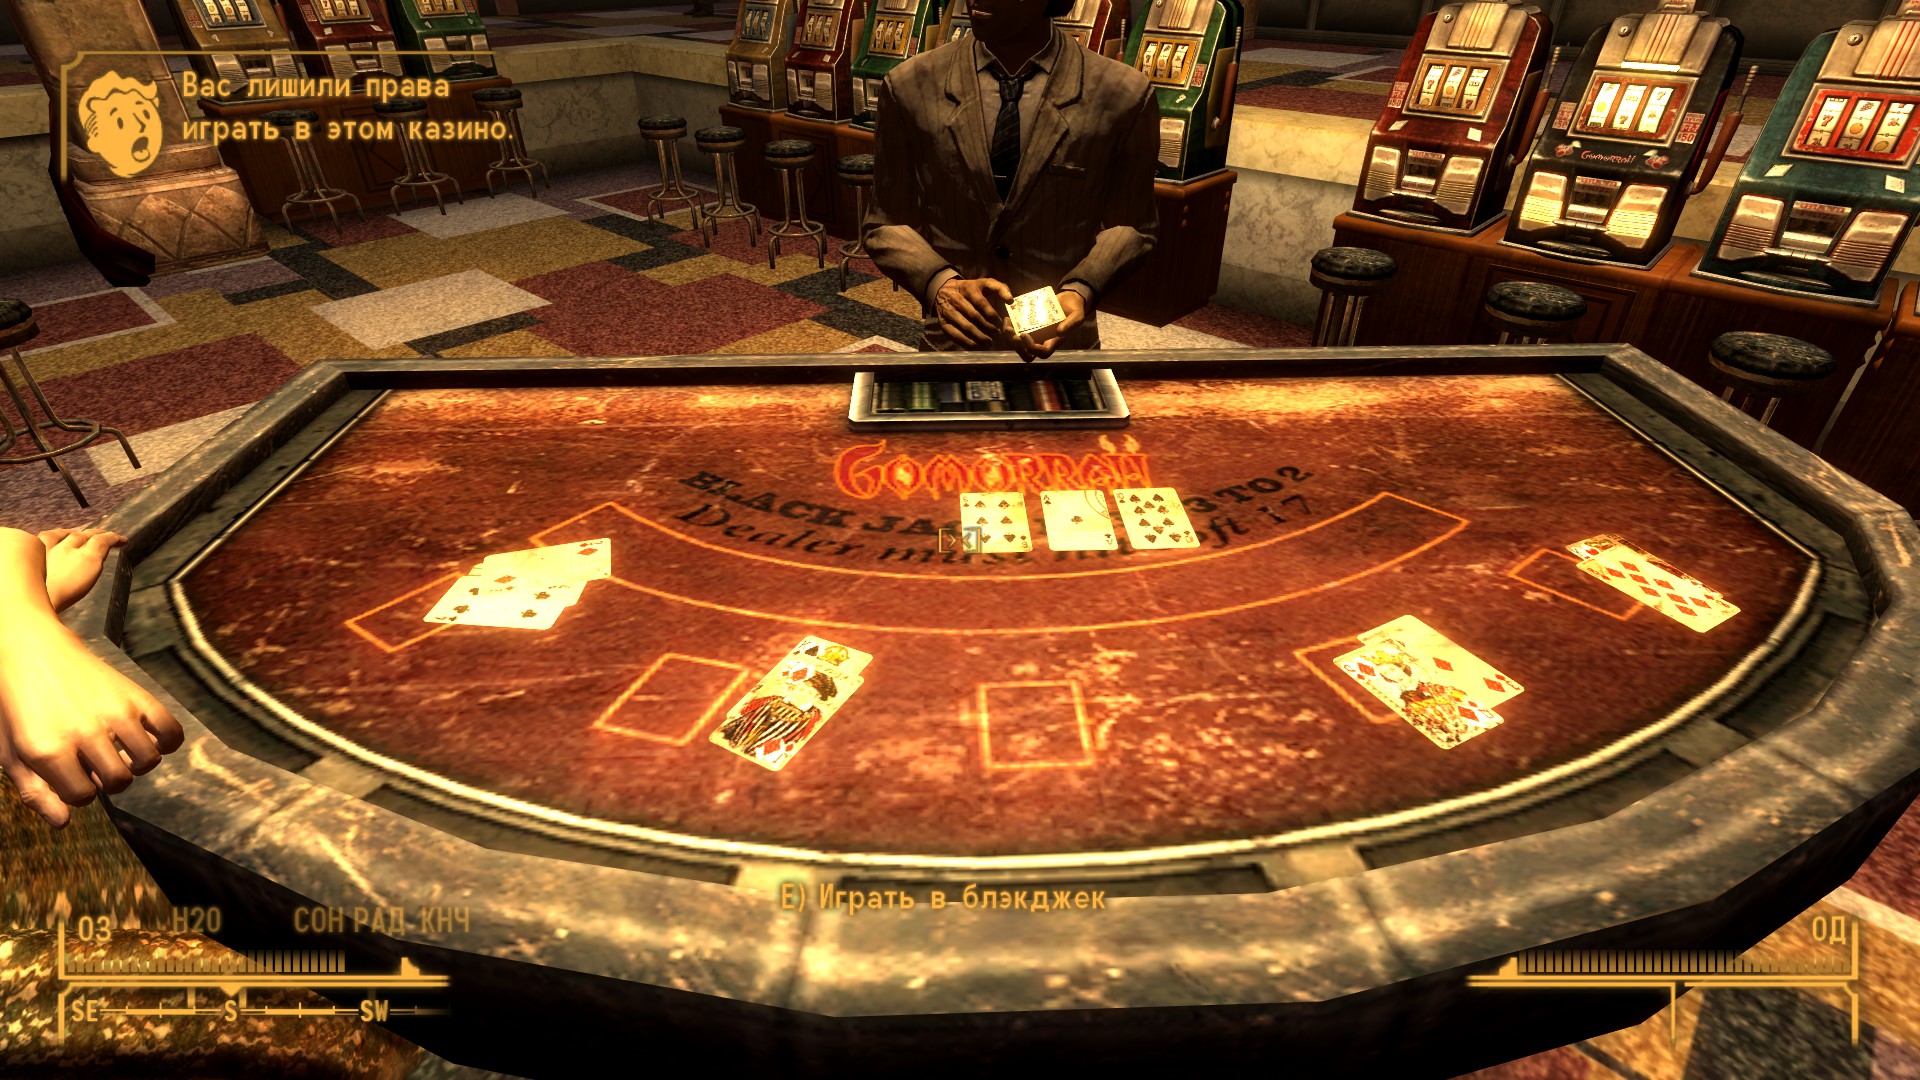 Как играть в казино fallout new vegas расписание казино азов сити